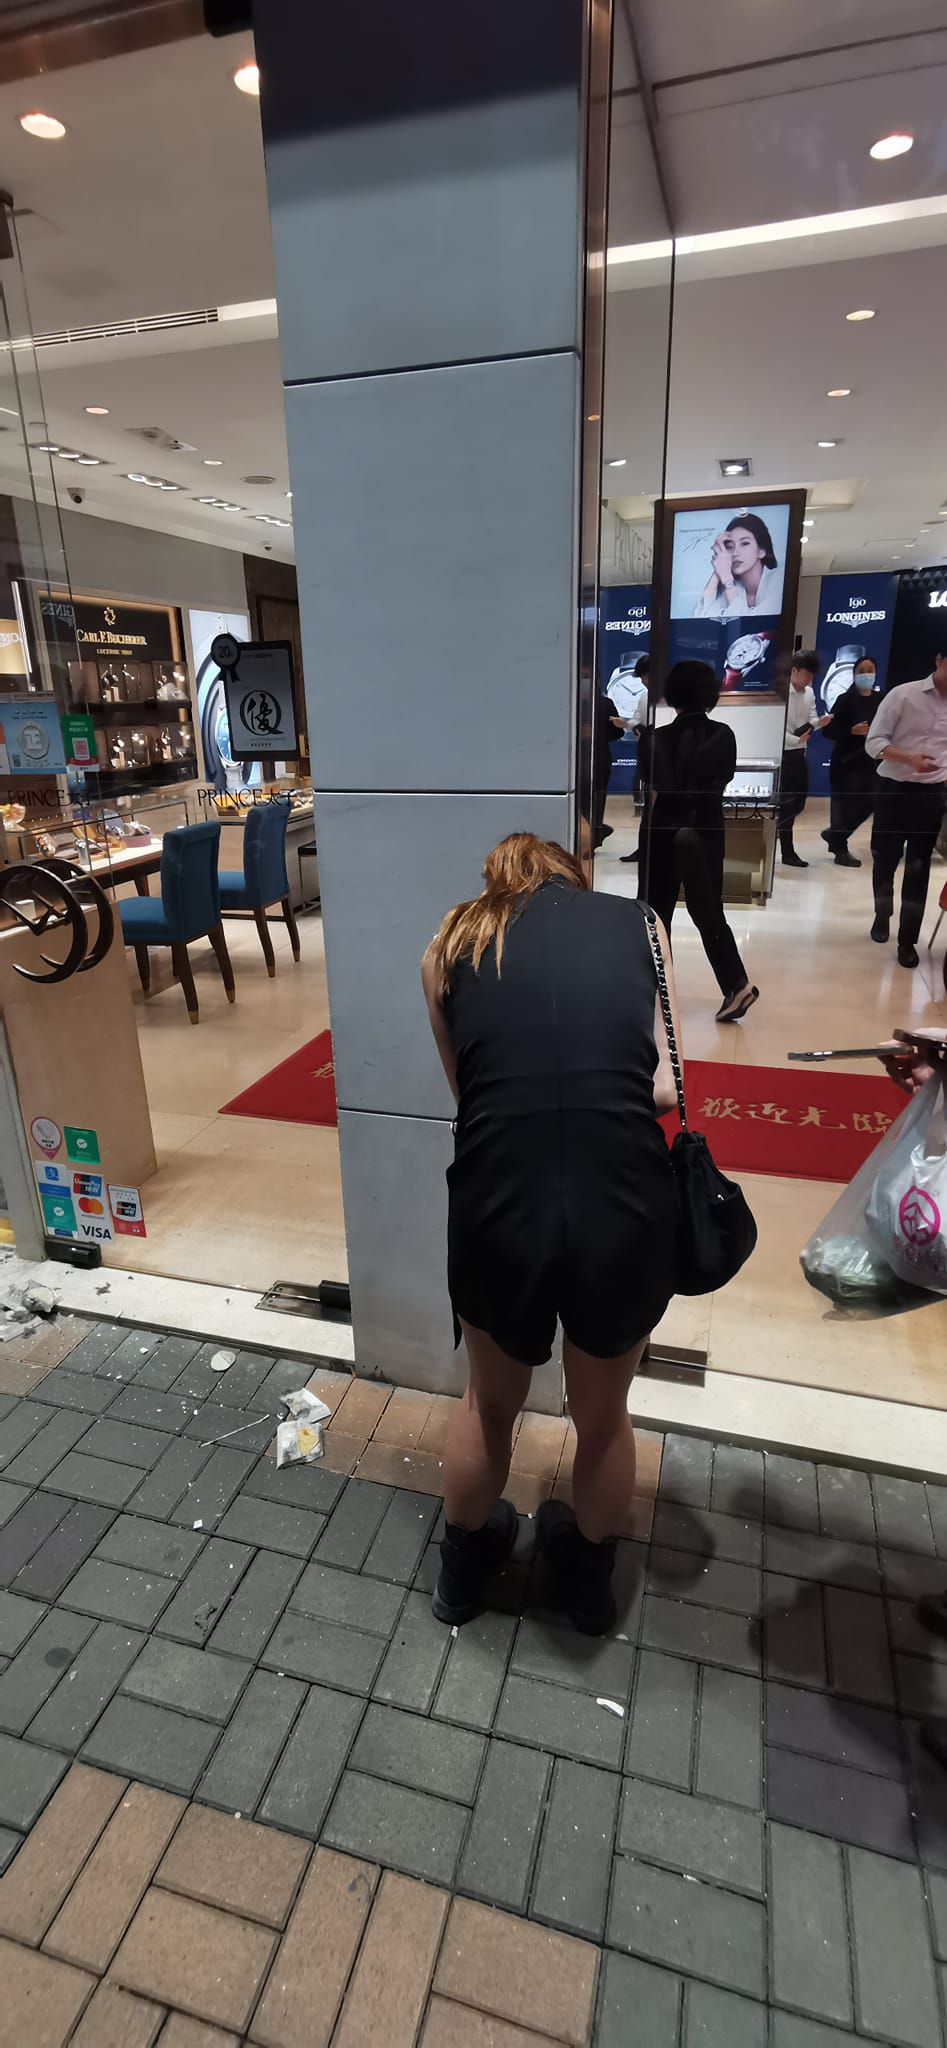 女子手臂被打中。香港突发事故报料区及讨论区FB